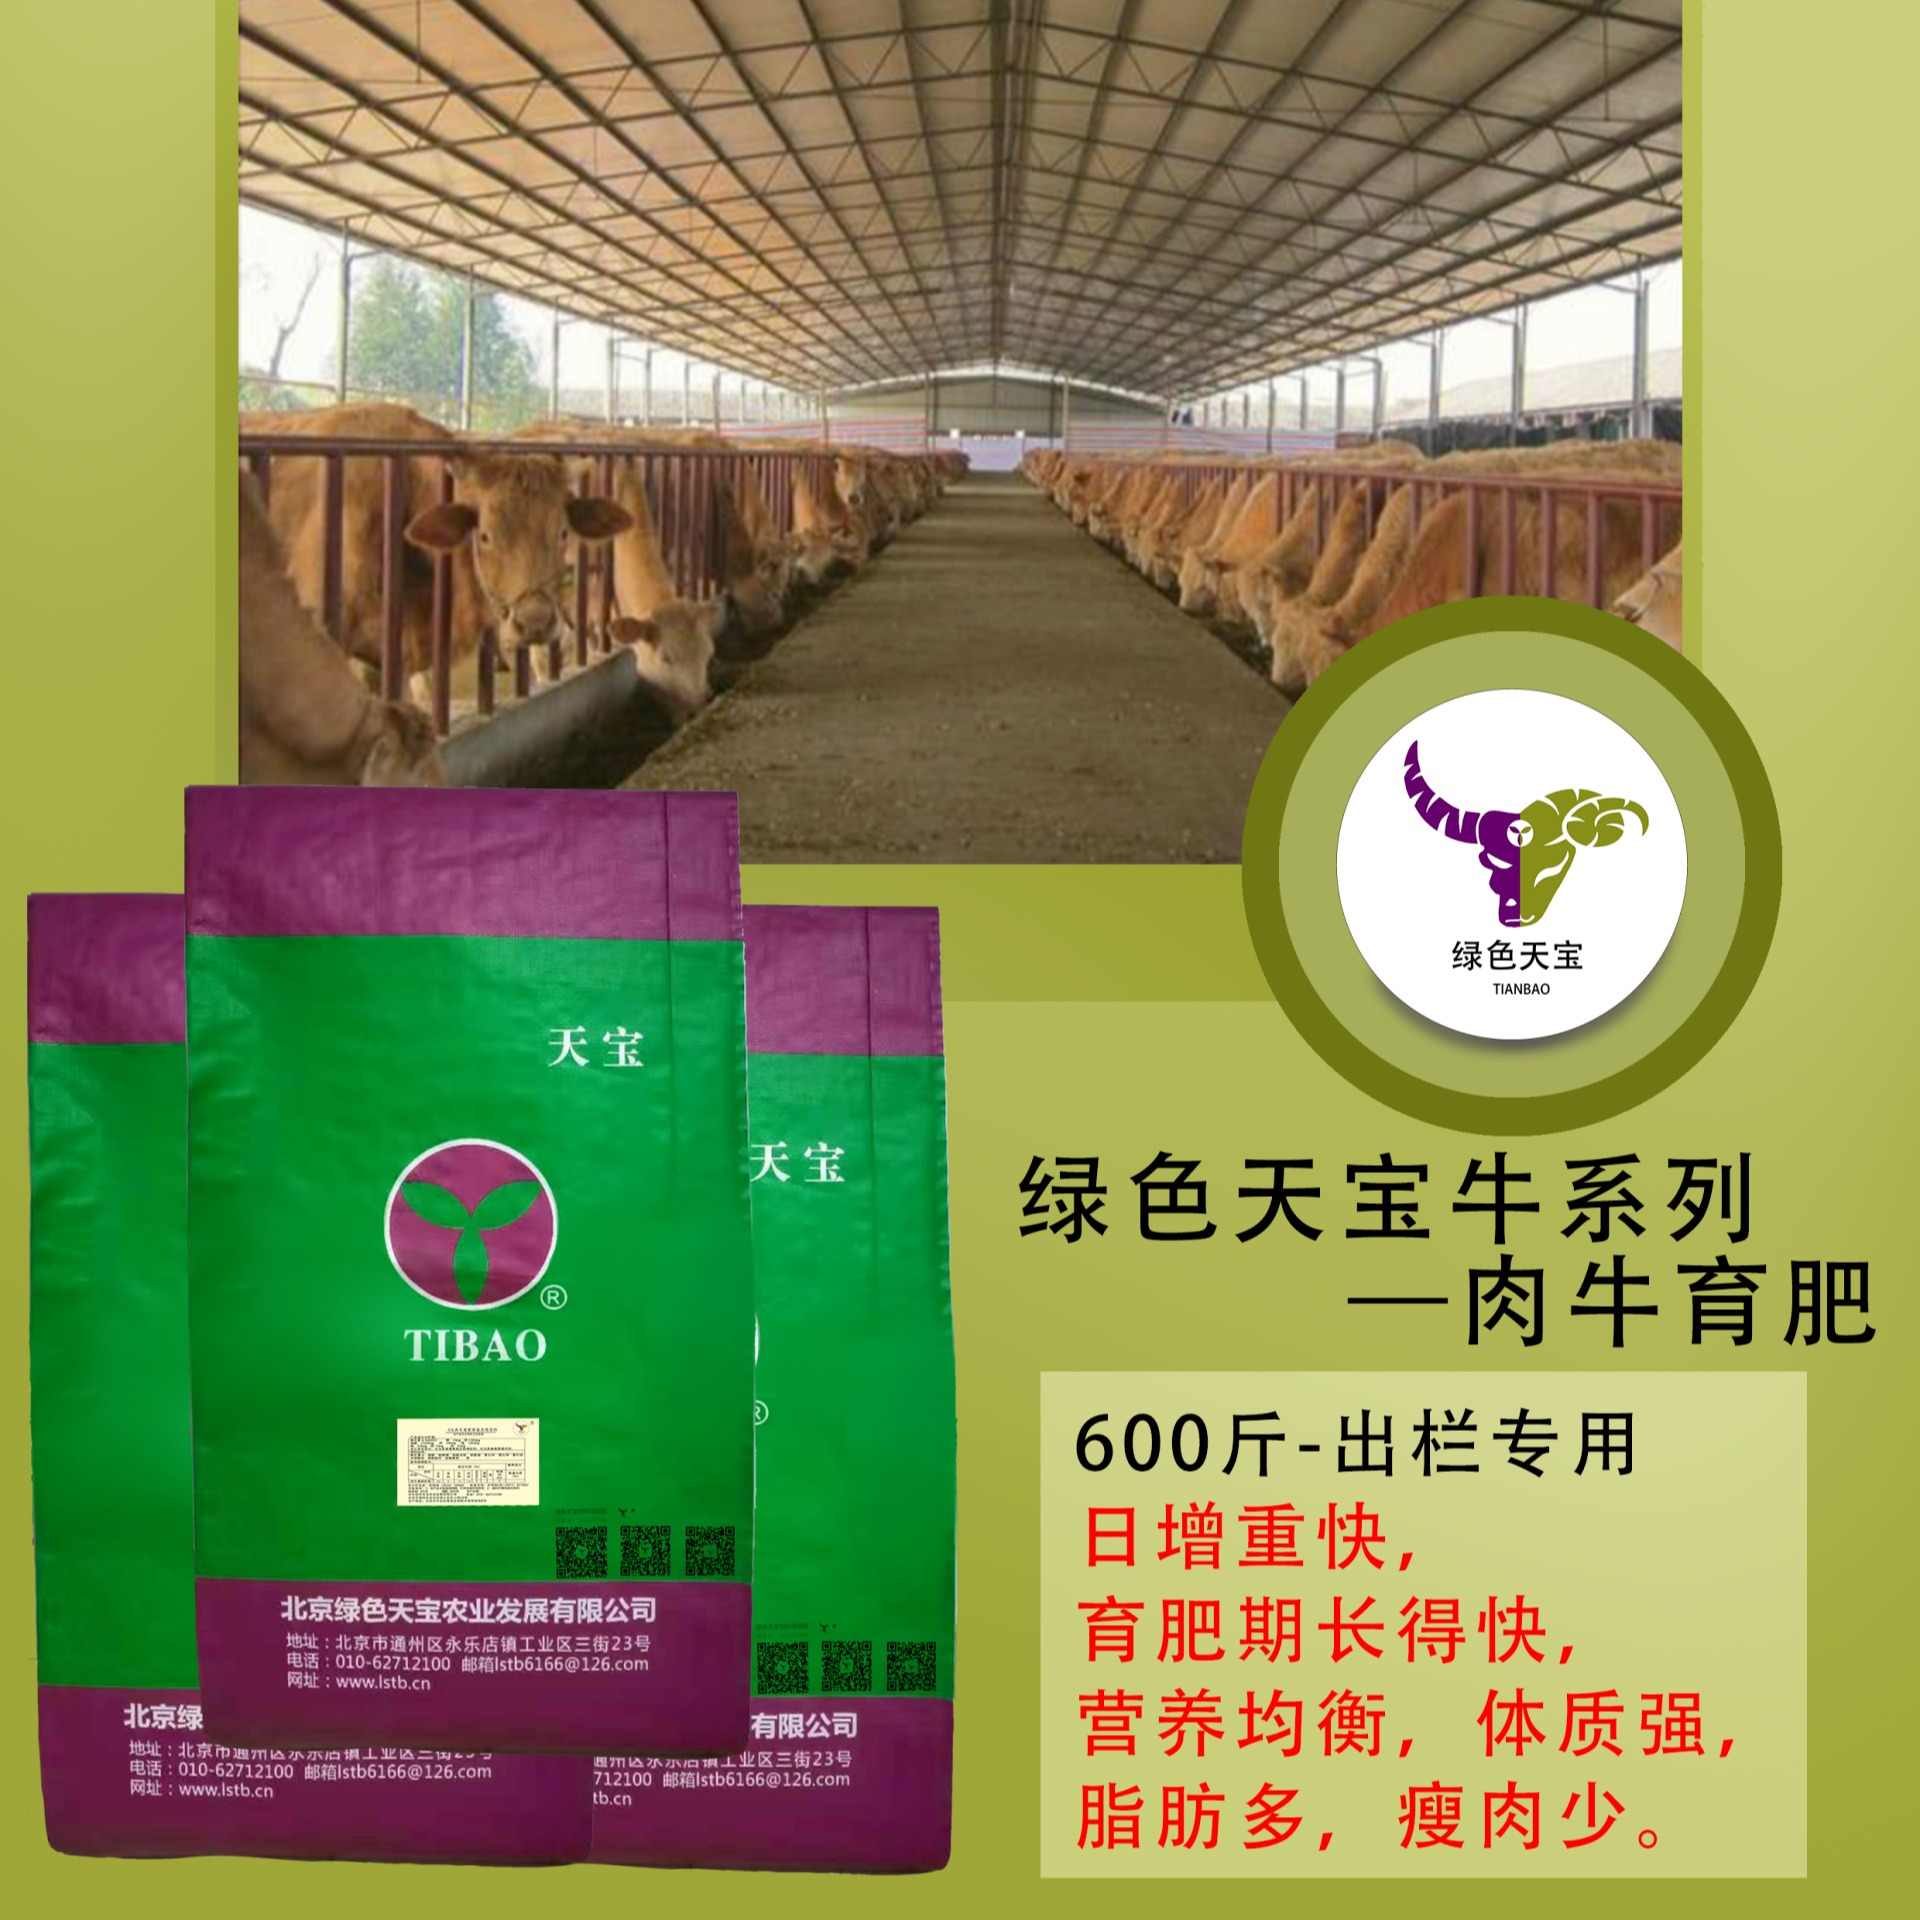 5%肉牛育肥期复合预混料  育肥牛育肥期间的饲料配方比例   快速育肥图片